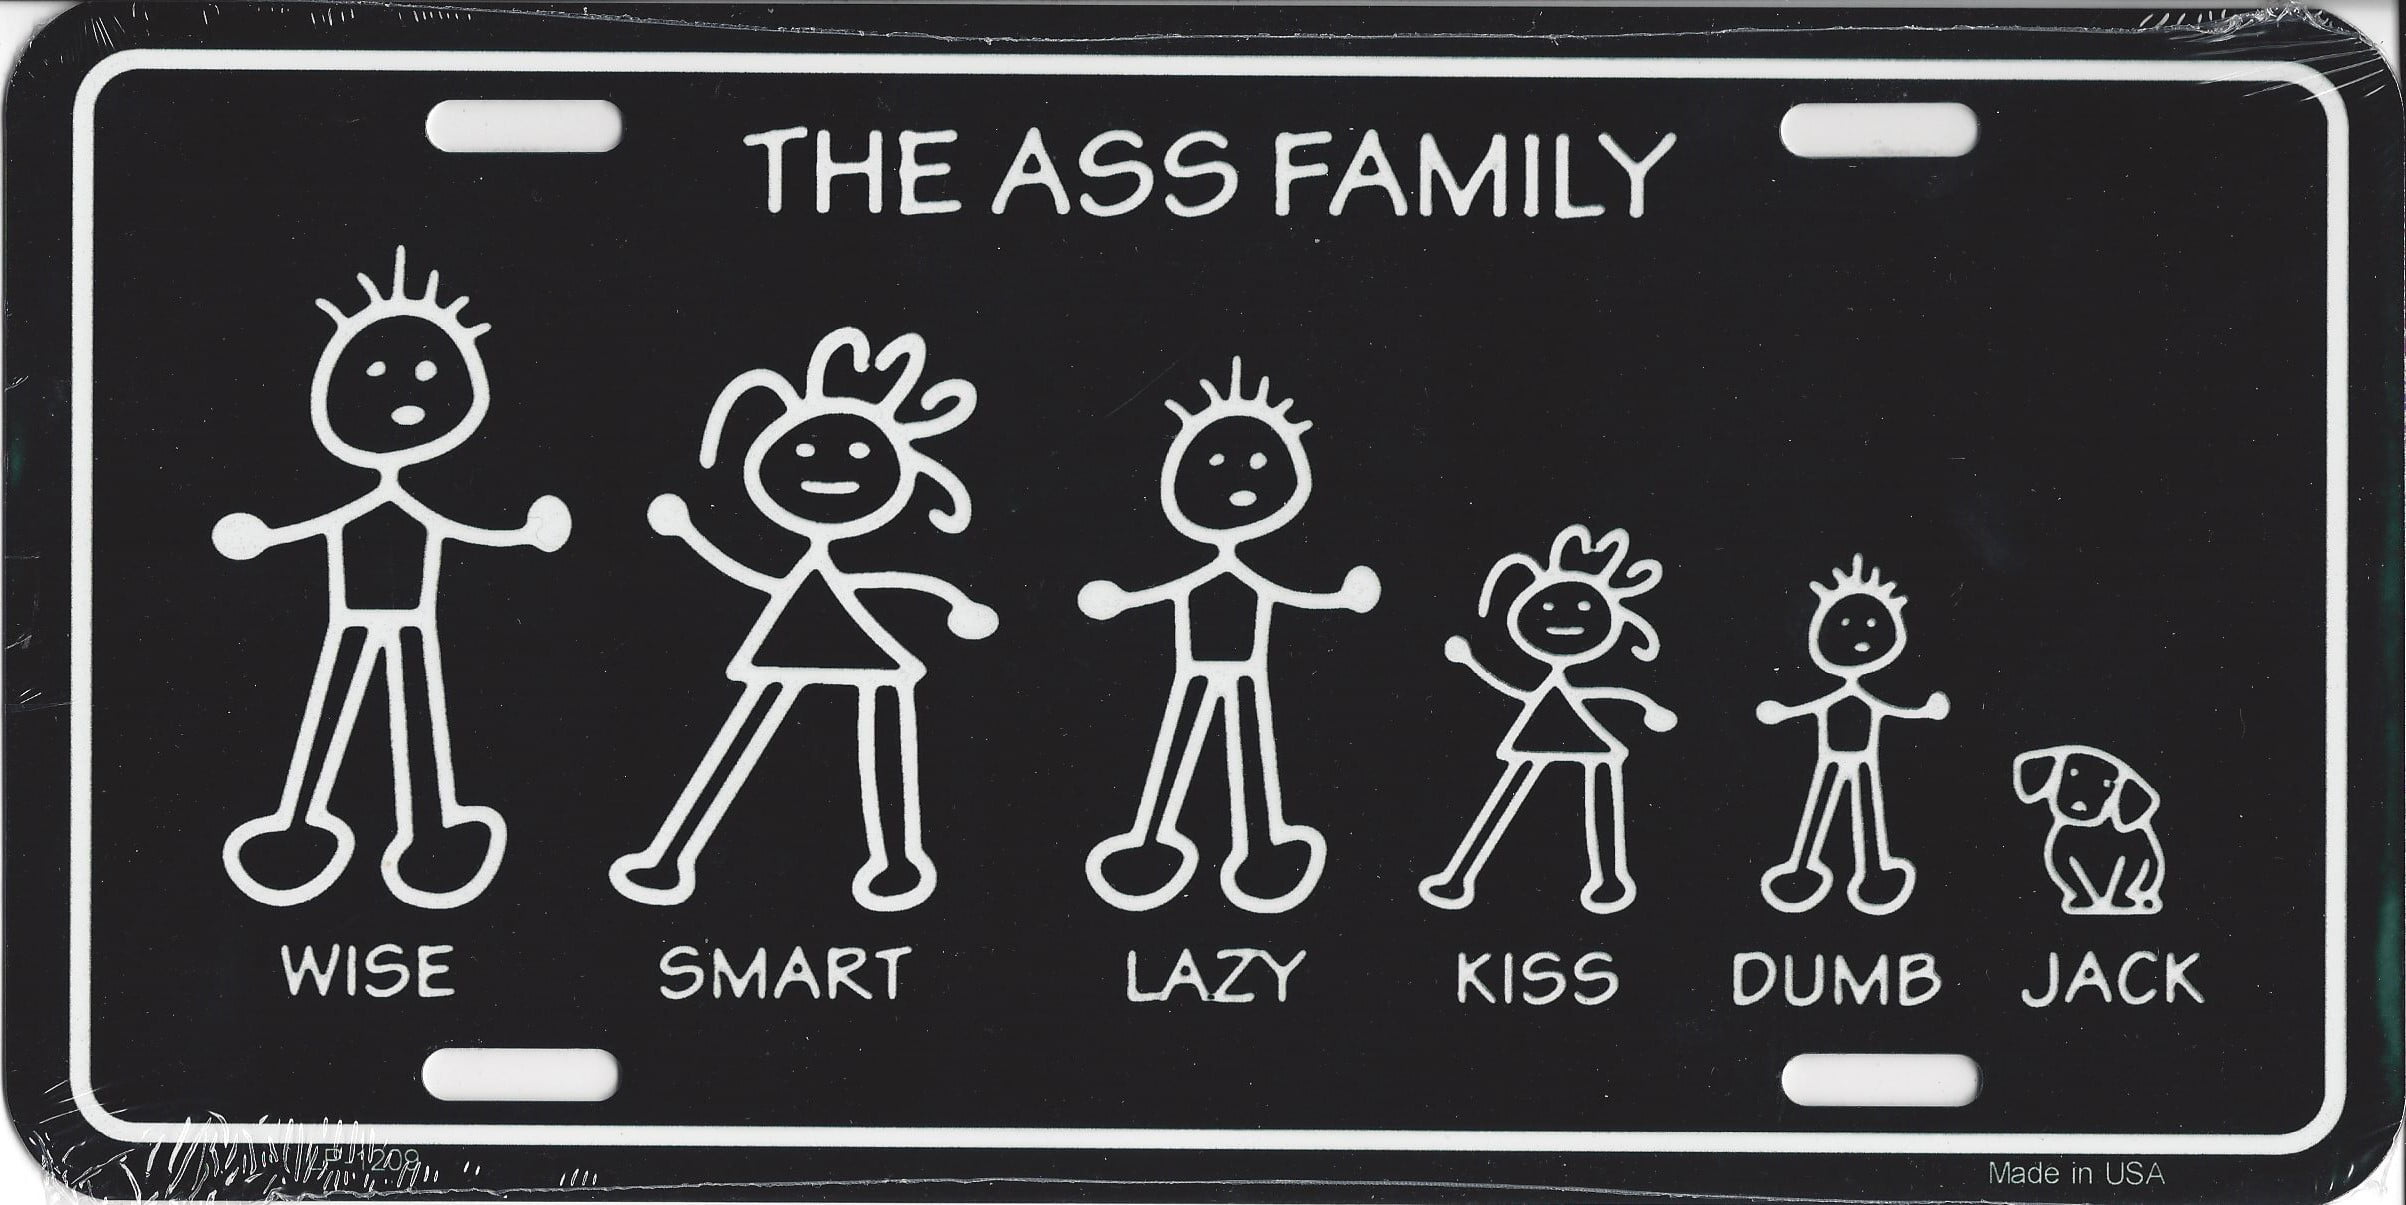 Ass Family